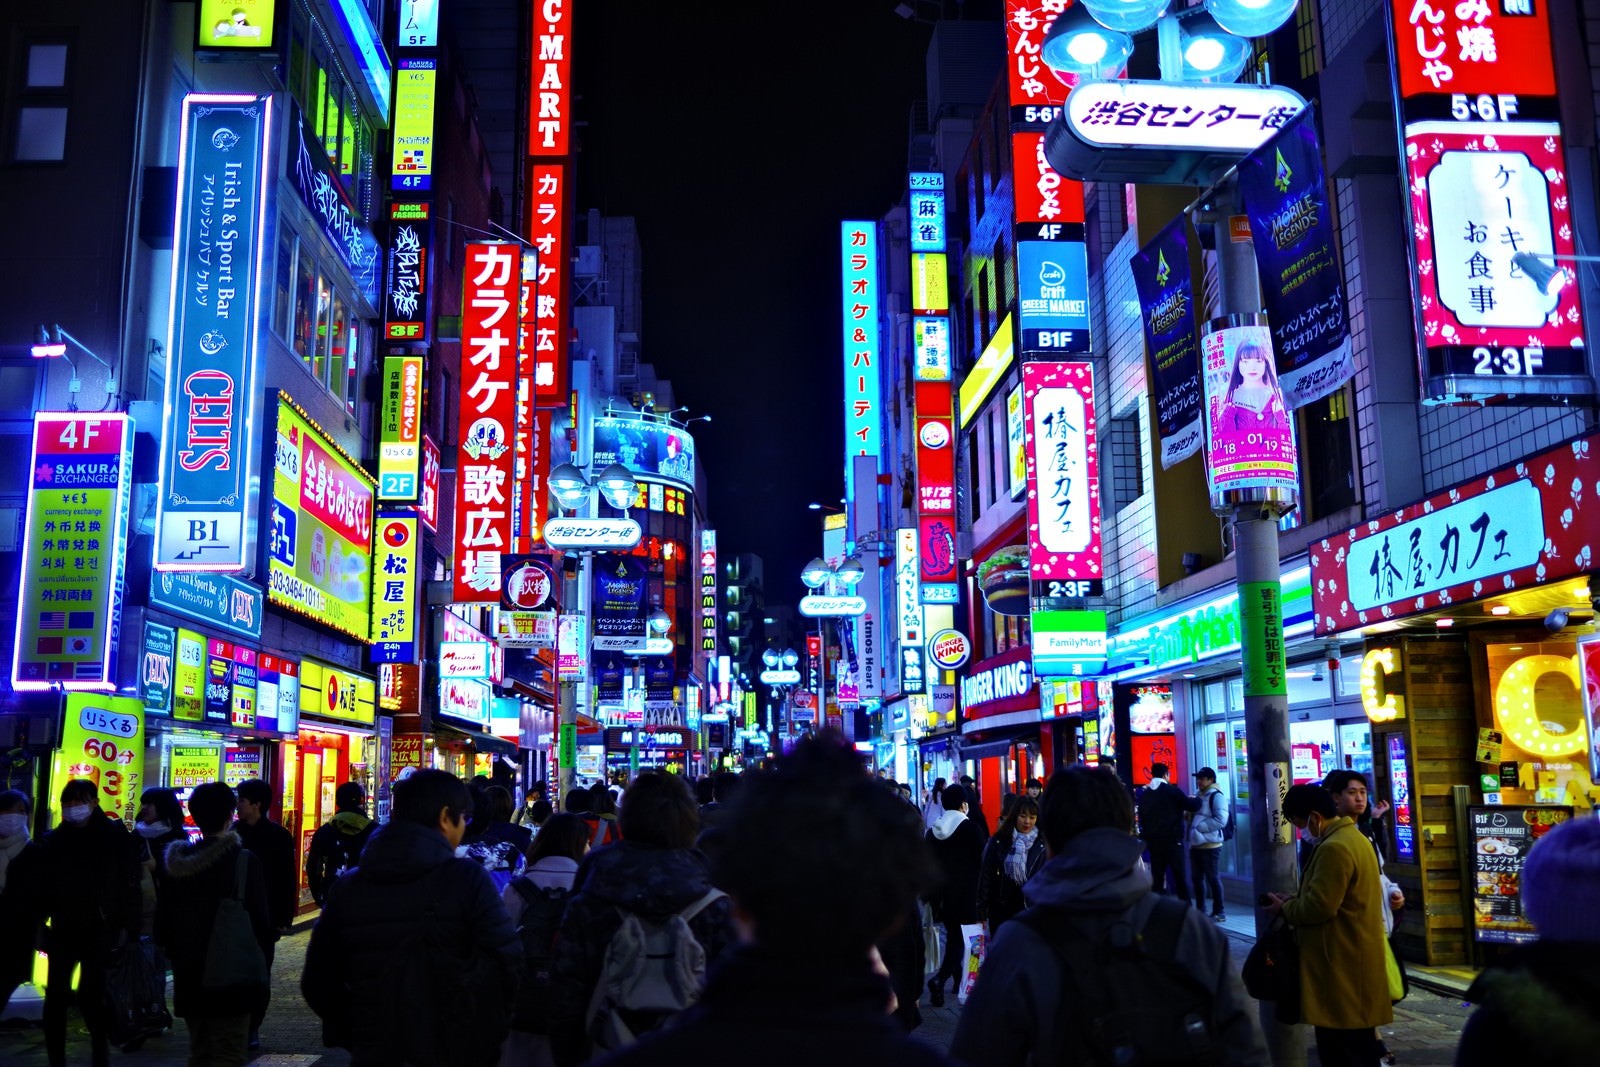 「渋谷センター街のネオンギラギラ」の写真